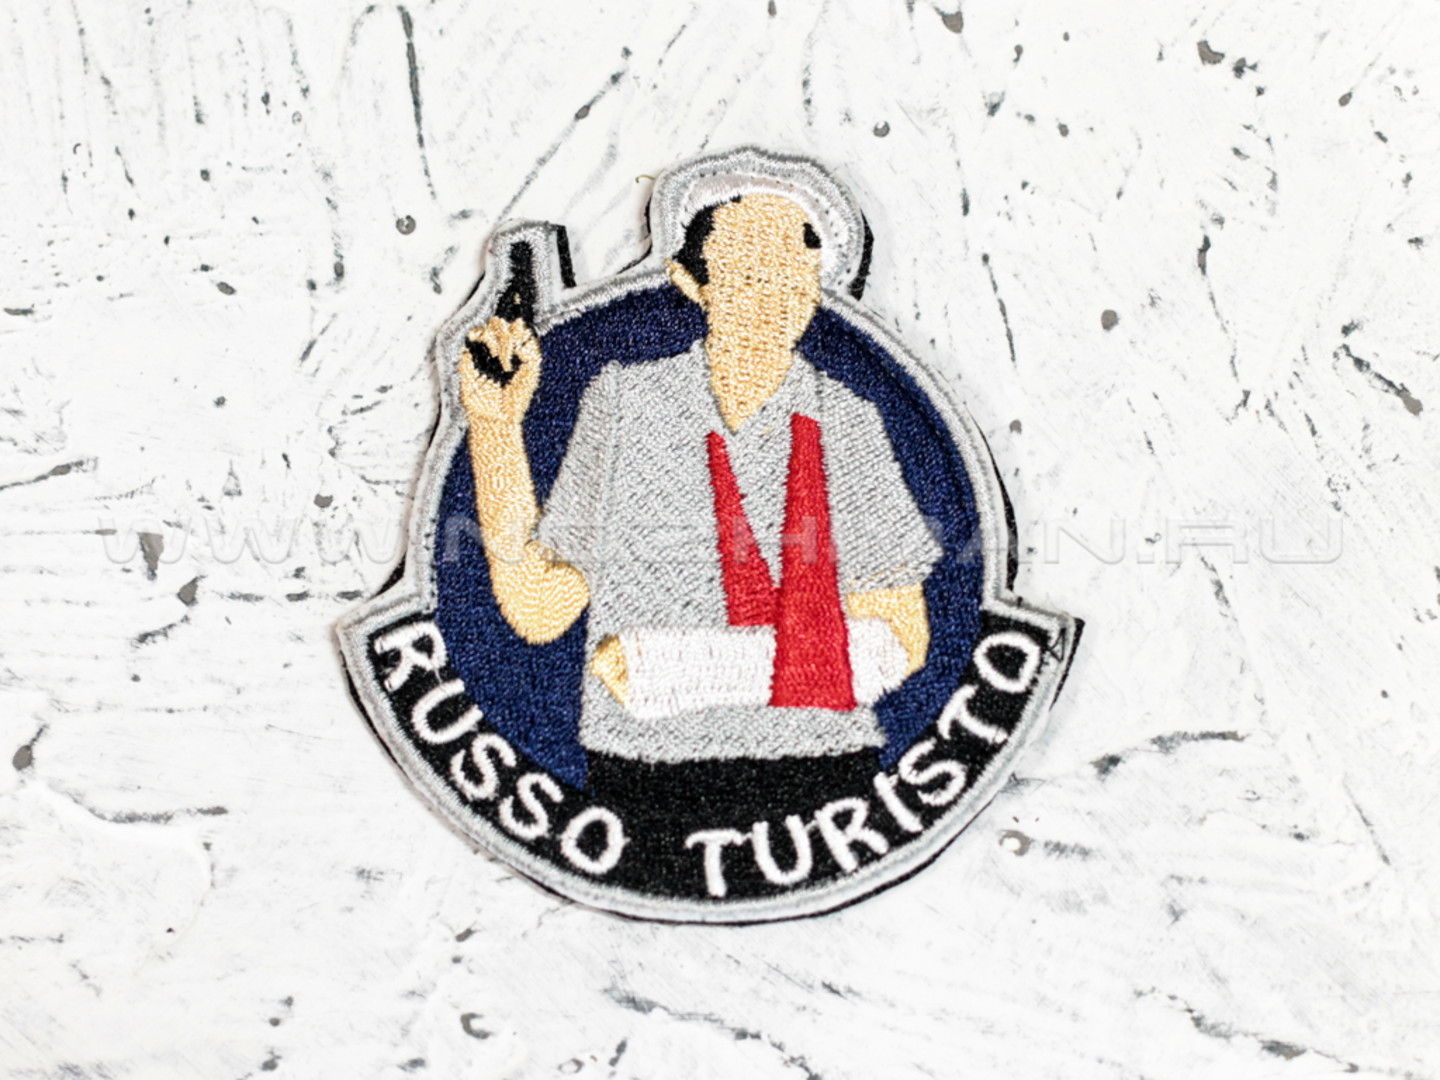 Патч П-99 "Russo Turisto"